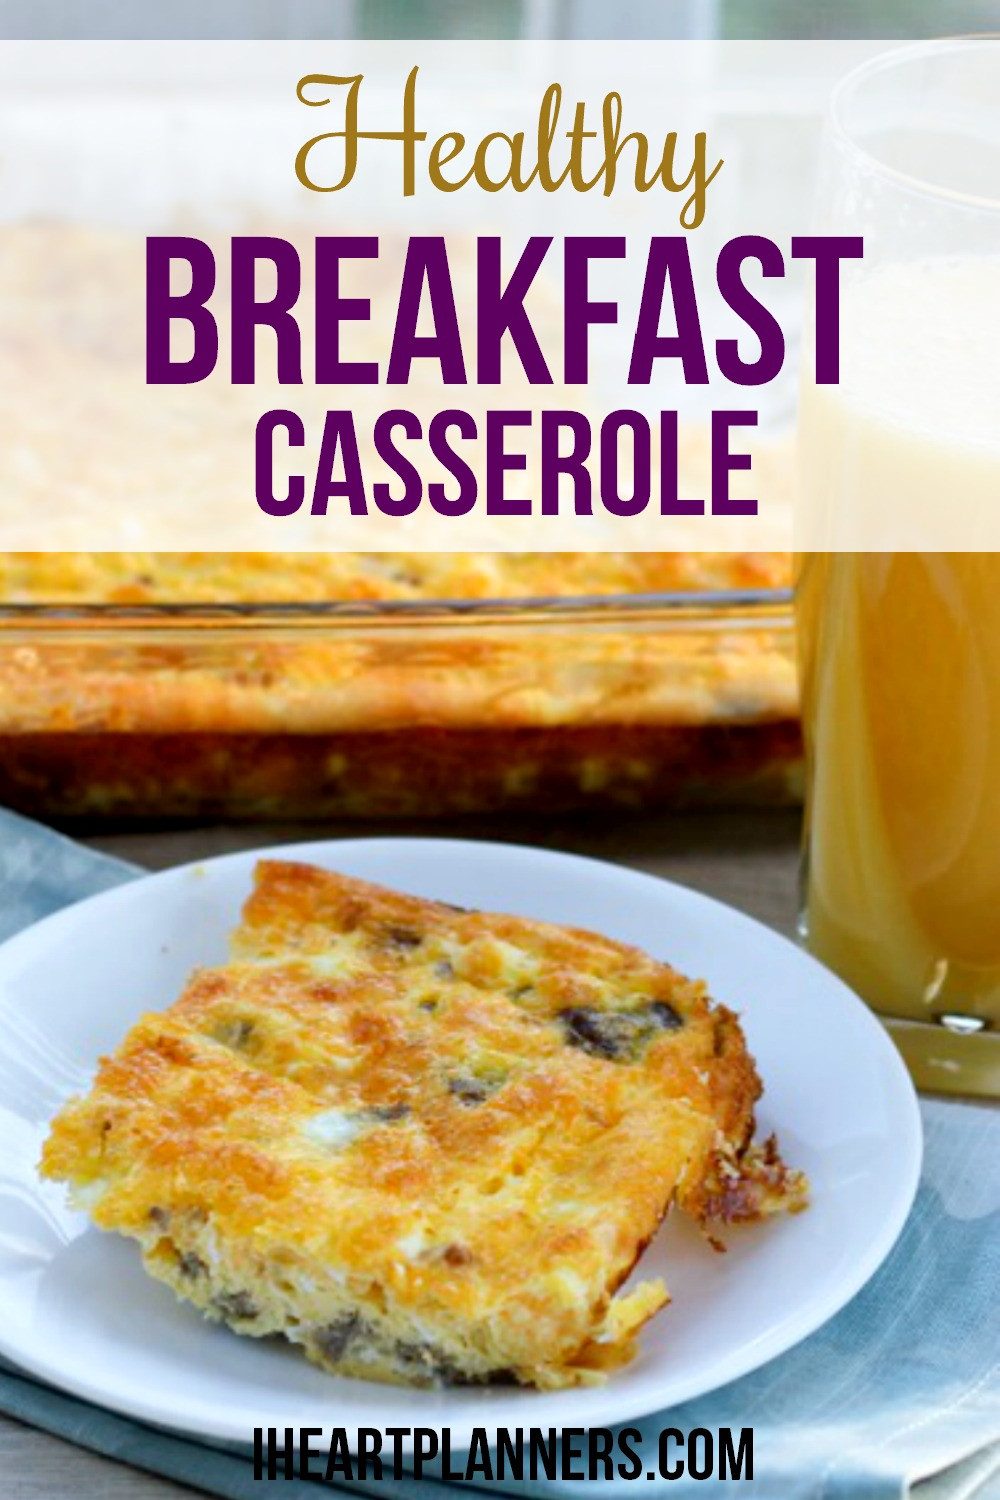 Tasty Breakfast Recipes
 Healthy Breakfast Casserole with Eggs I Heart Planners